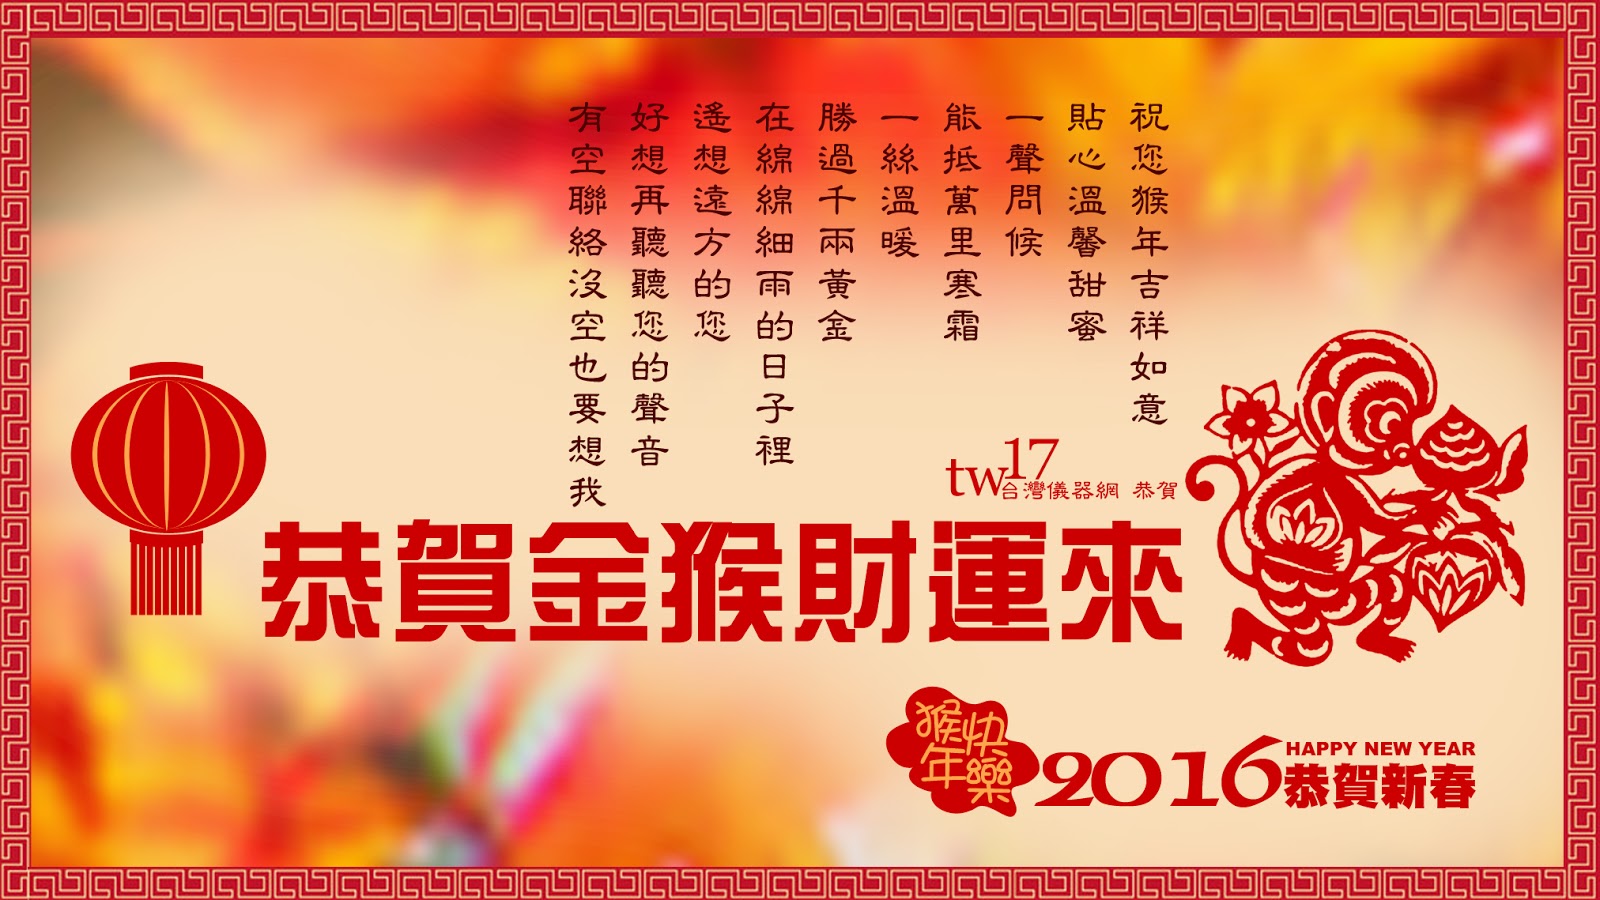 願好朋友一切平安，尤其是台南的朋友～恭賀金猴財運來～2016 HAPPY NEW YEAR